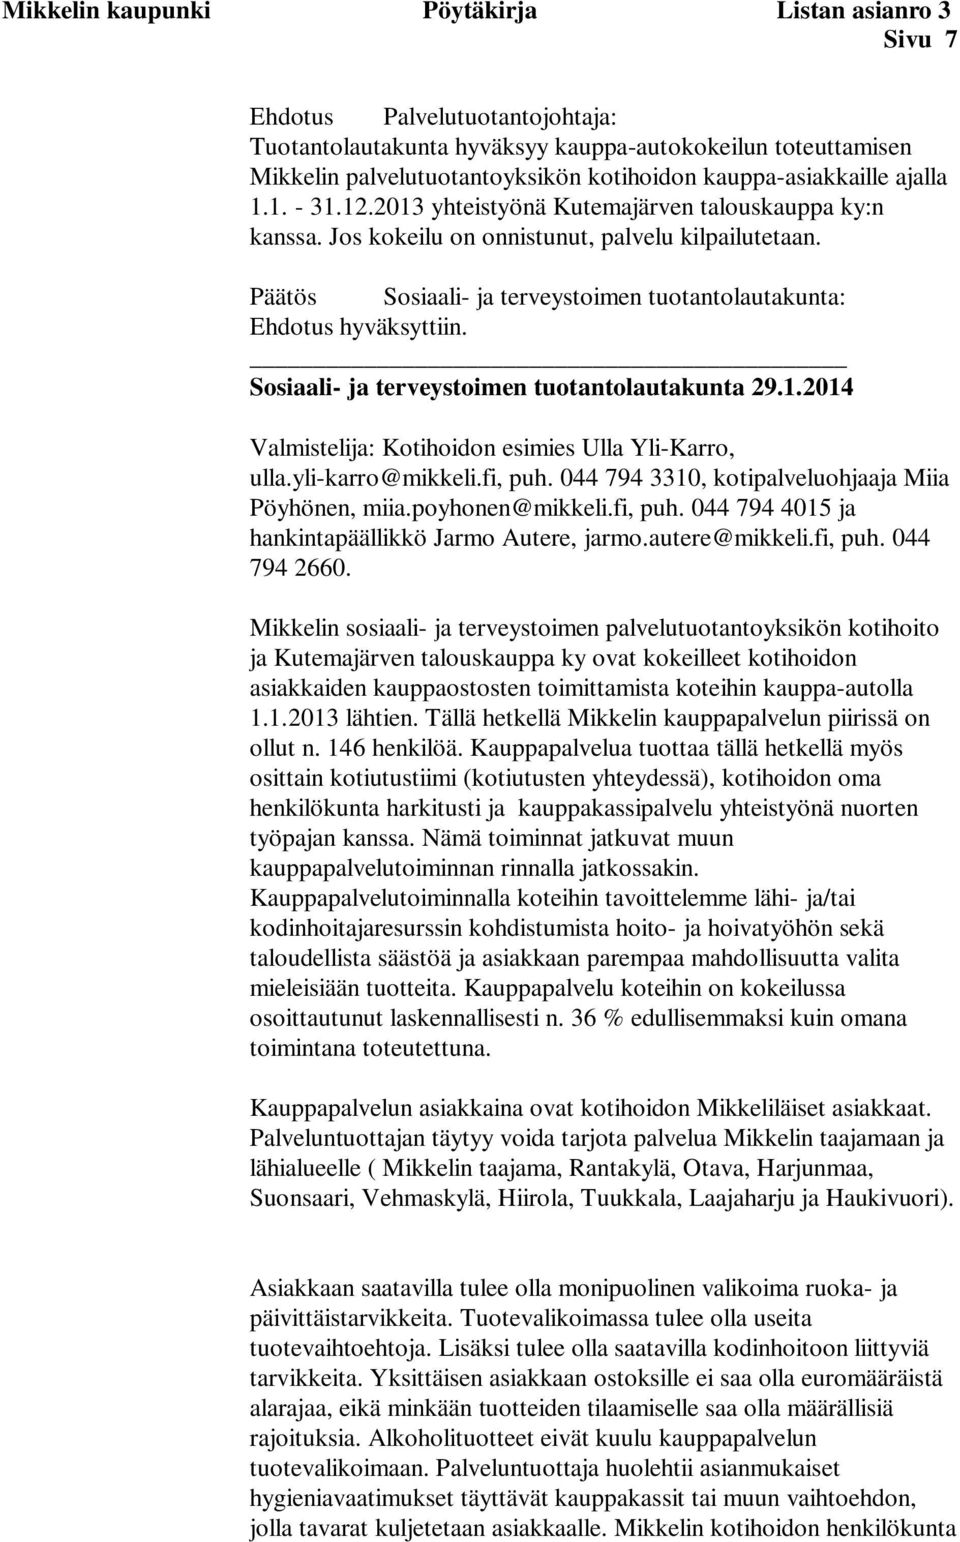 Päätös Sosiaali- ja terveystoimen tuotantolautakunta: Ehdotus hyväksyttiin. Sosiaali- ja terveystoimen tuotantolautakunta 29.1.2014 Valmistelija: Kotihoidon esimies Ulla Yli-Karro, ulla.